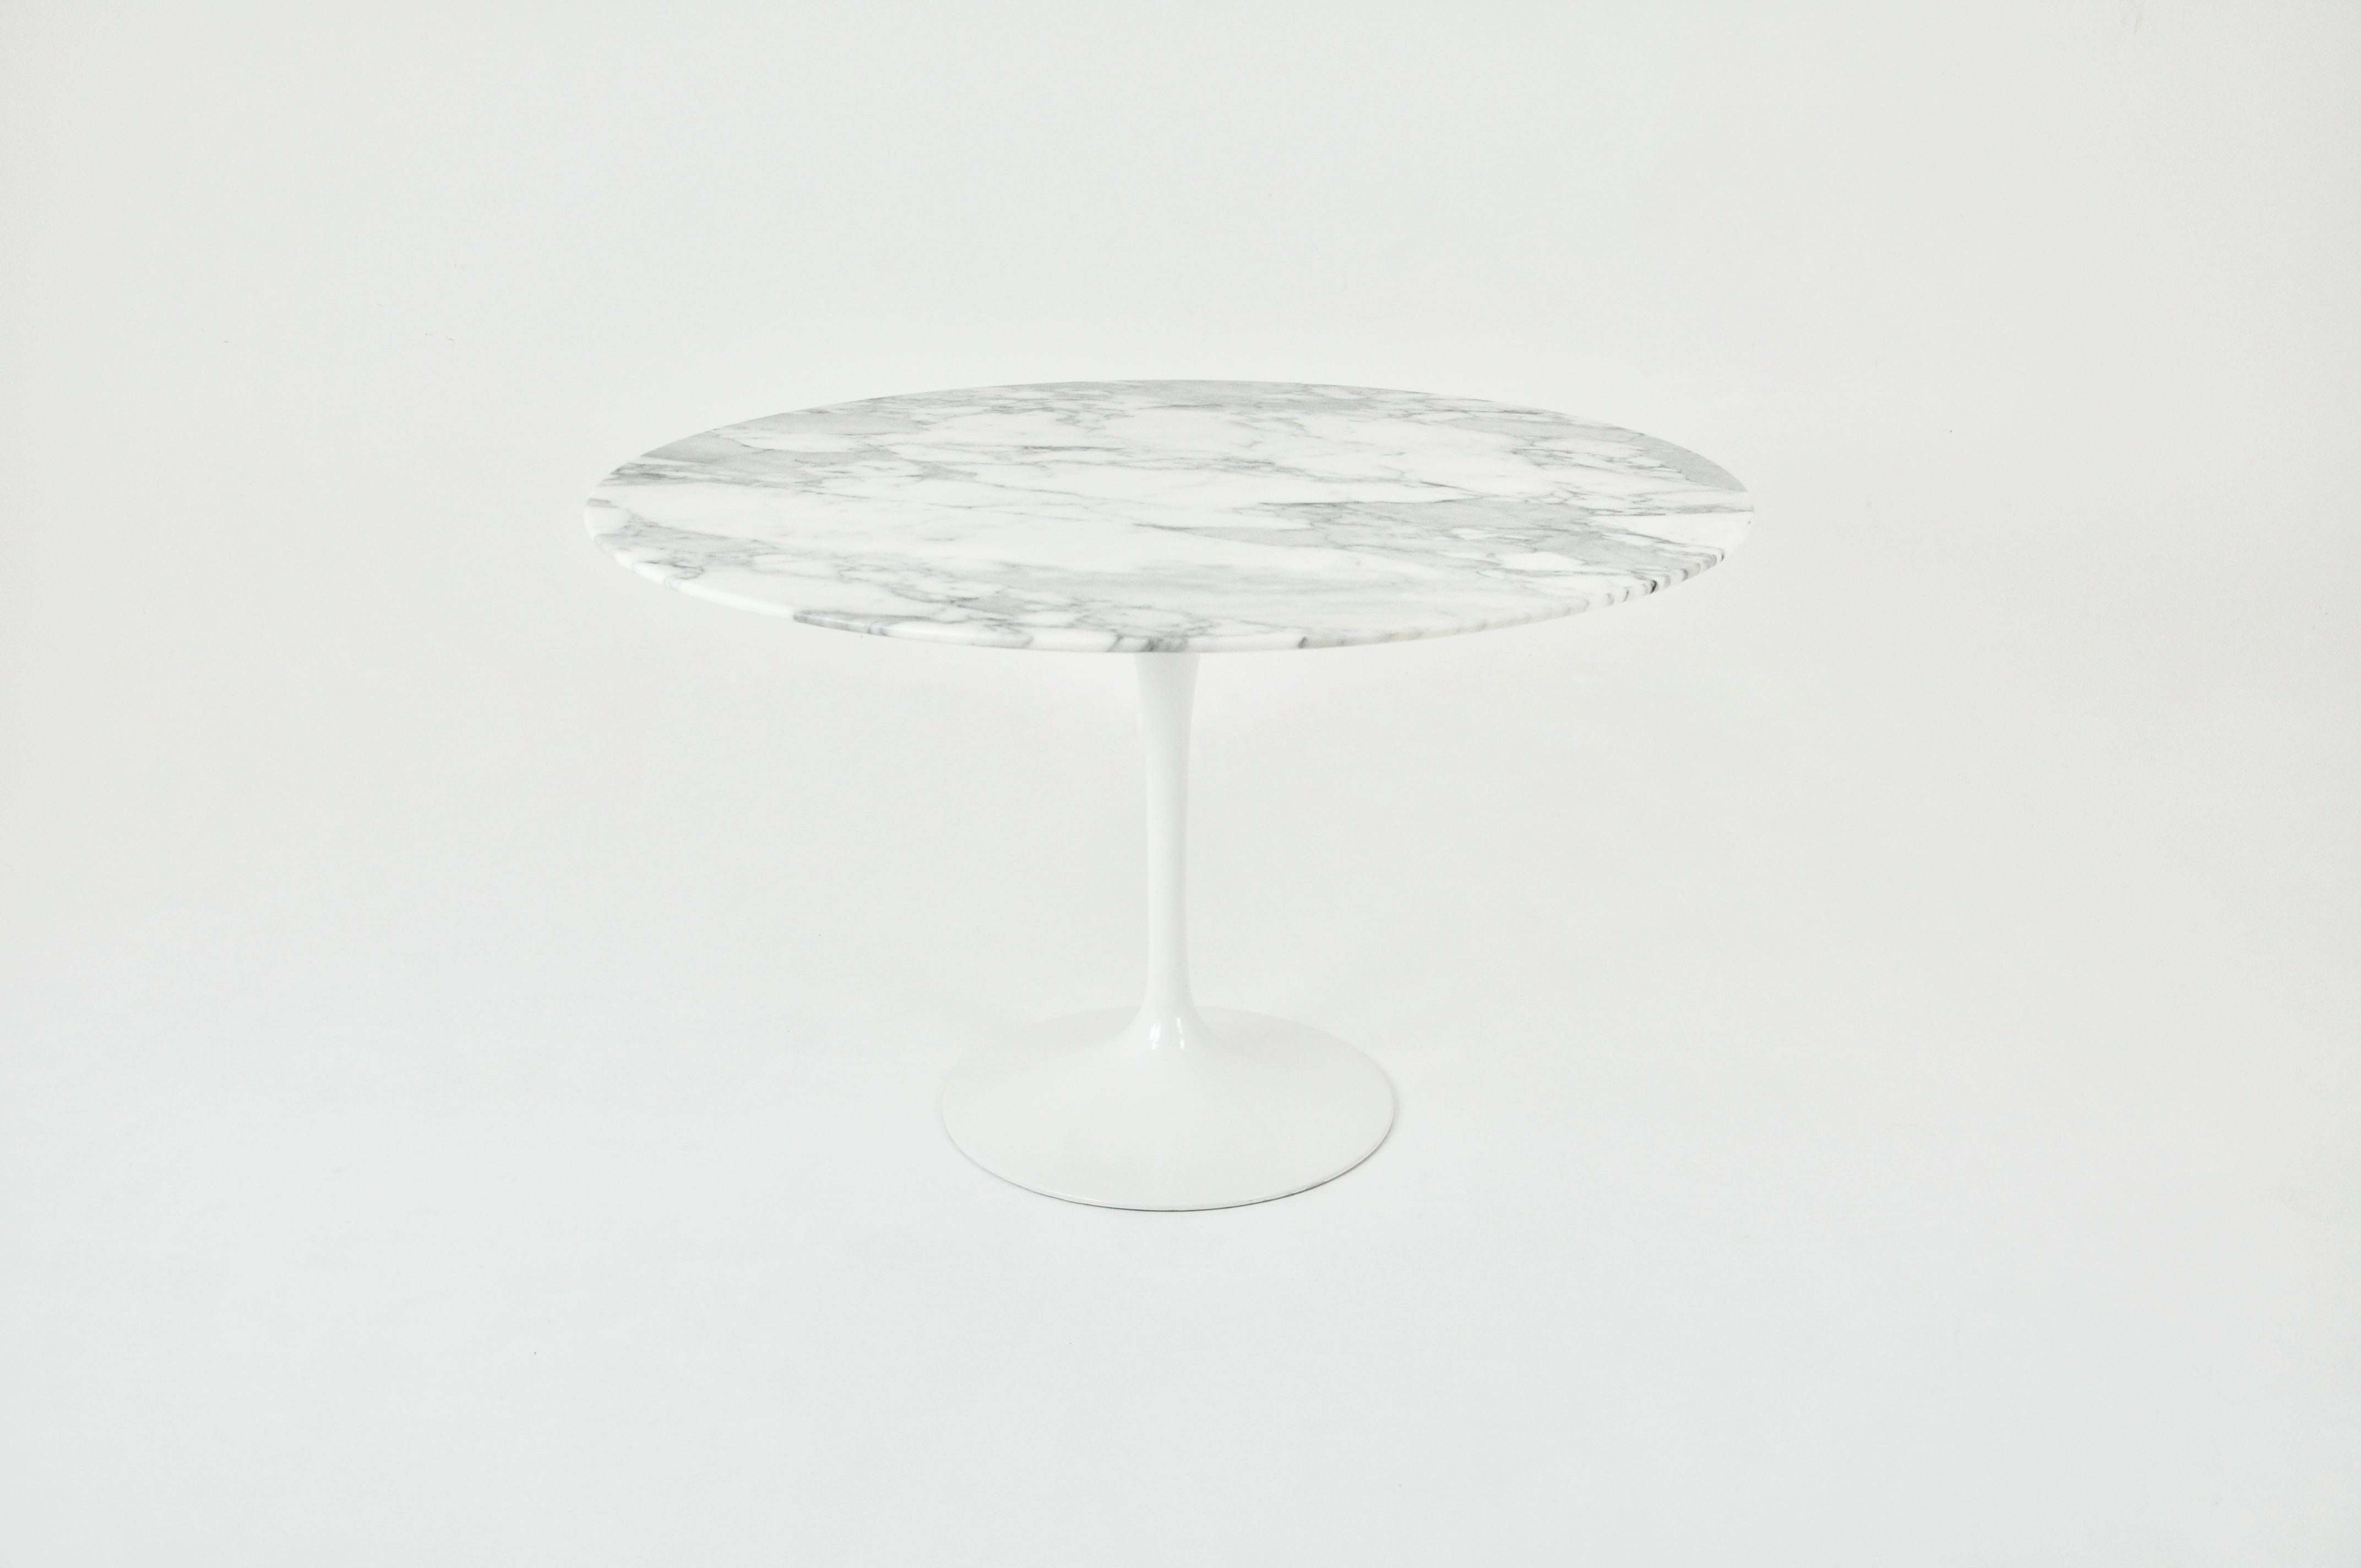 Runder Tisch mit Marmorplatte und Aluminiumfuß, entworfen von Eero Saarinen und hergestellt von Knoll International. Abnutzung durch die Zeit und das Alter des Tisches.